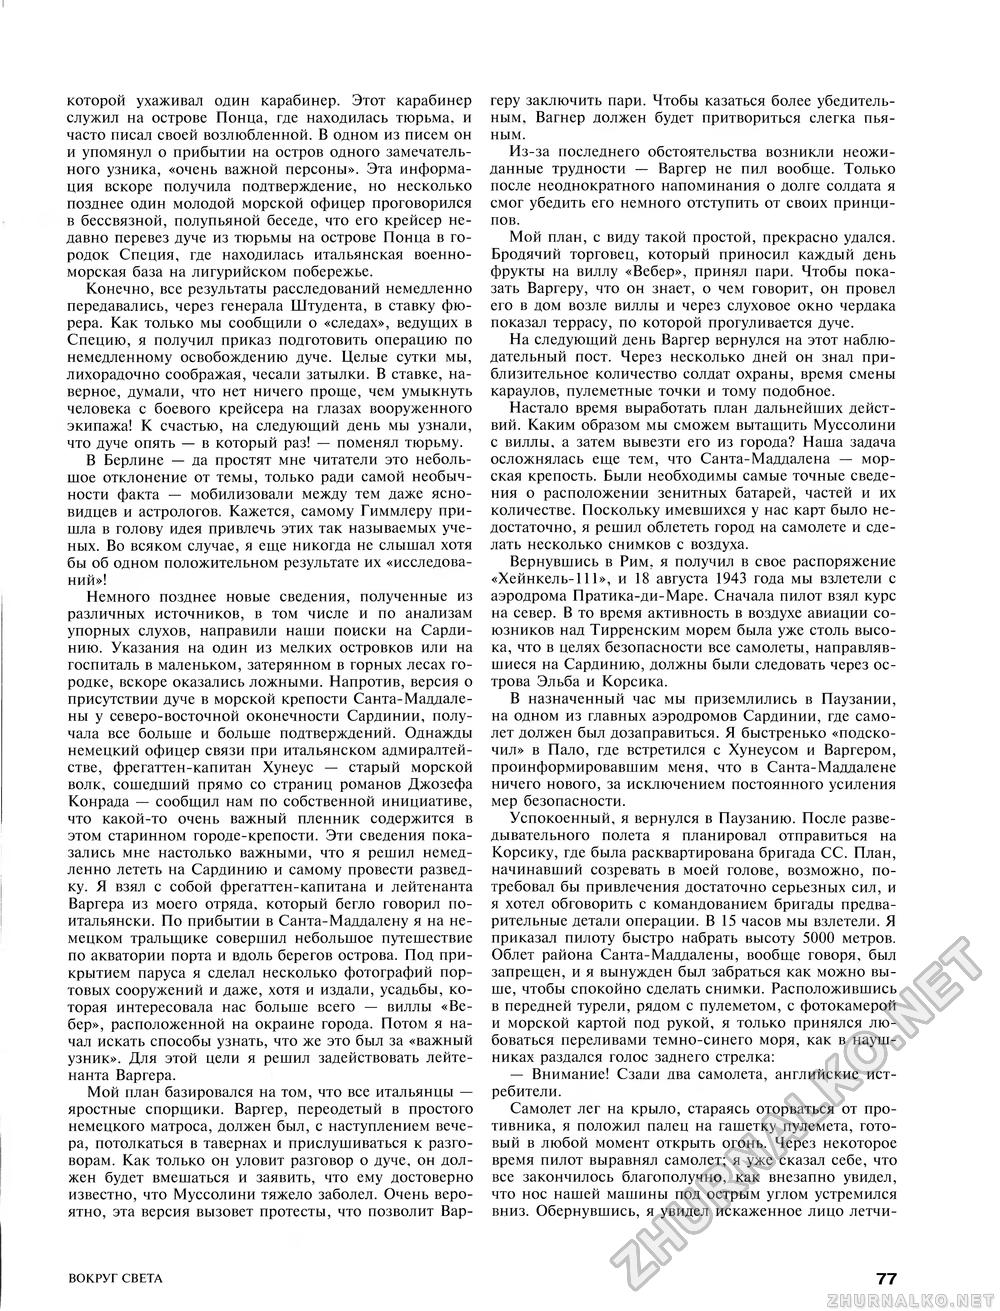 Вокруг света 1996-01, страница 66